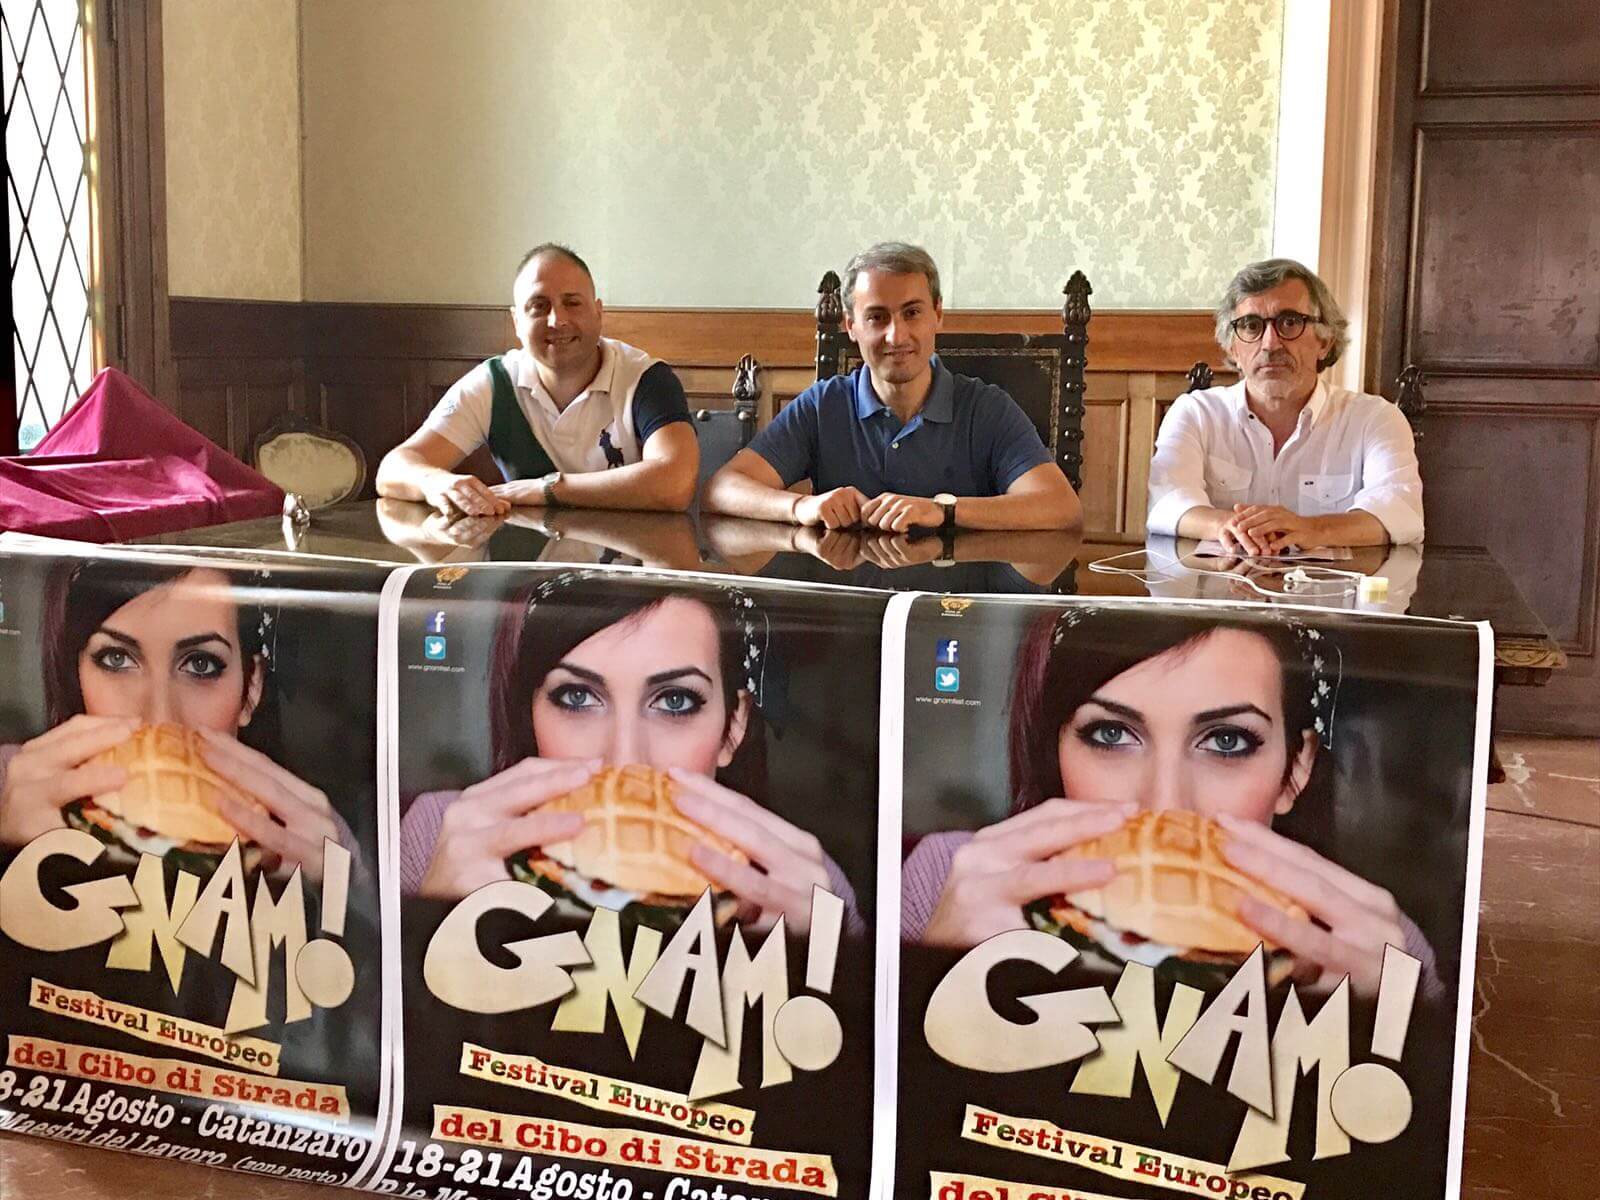 GNAM! II edizione del Festival Europeo del cibo di strada